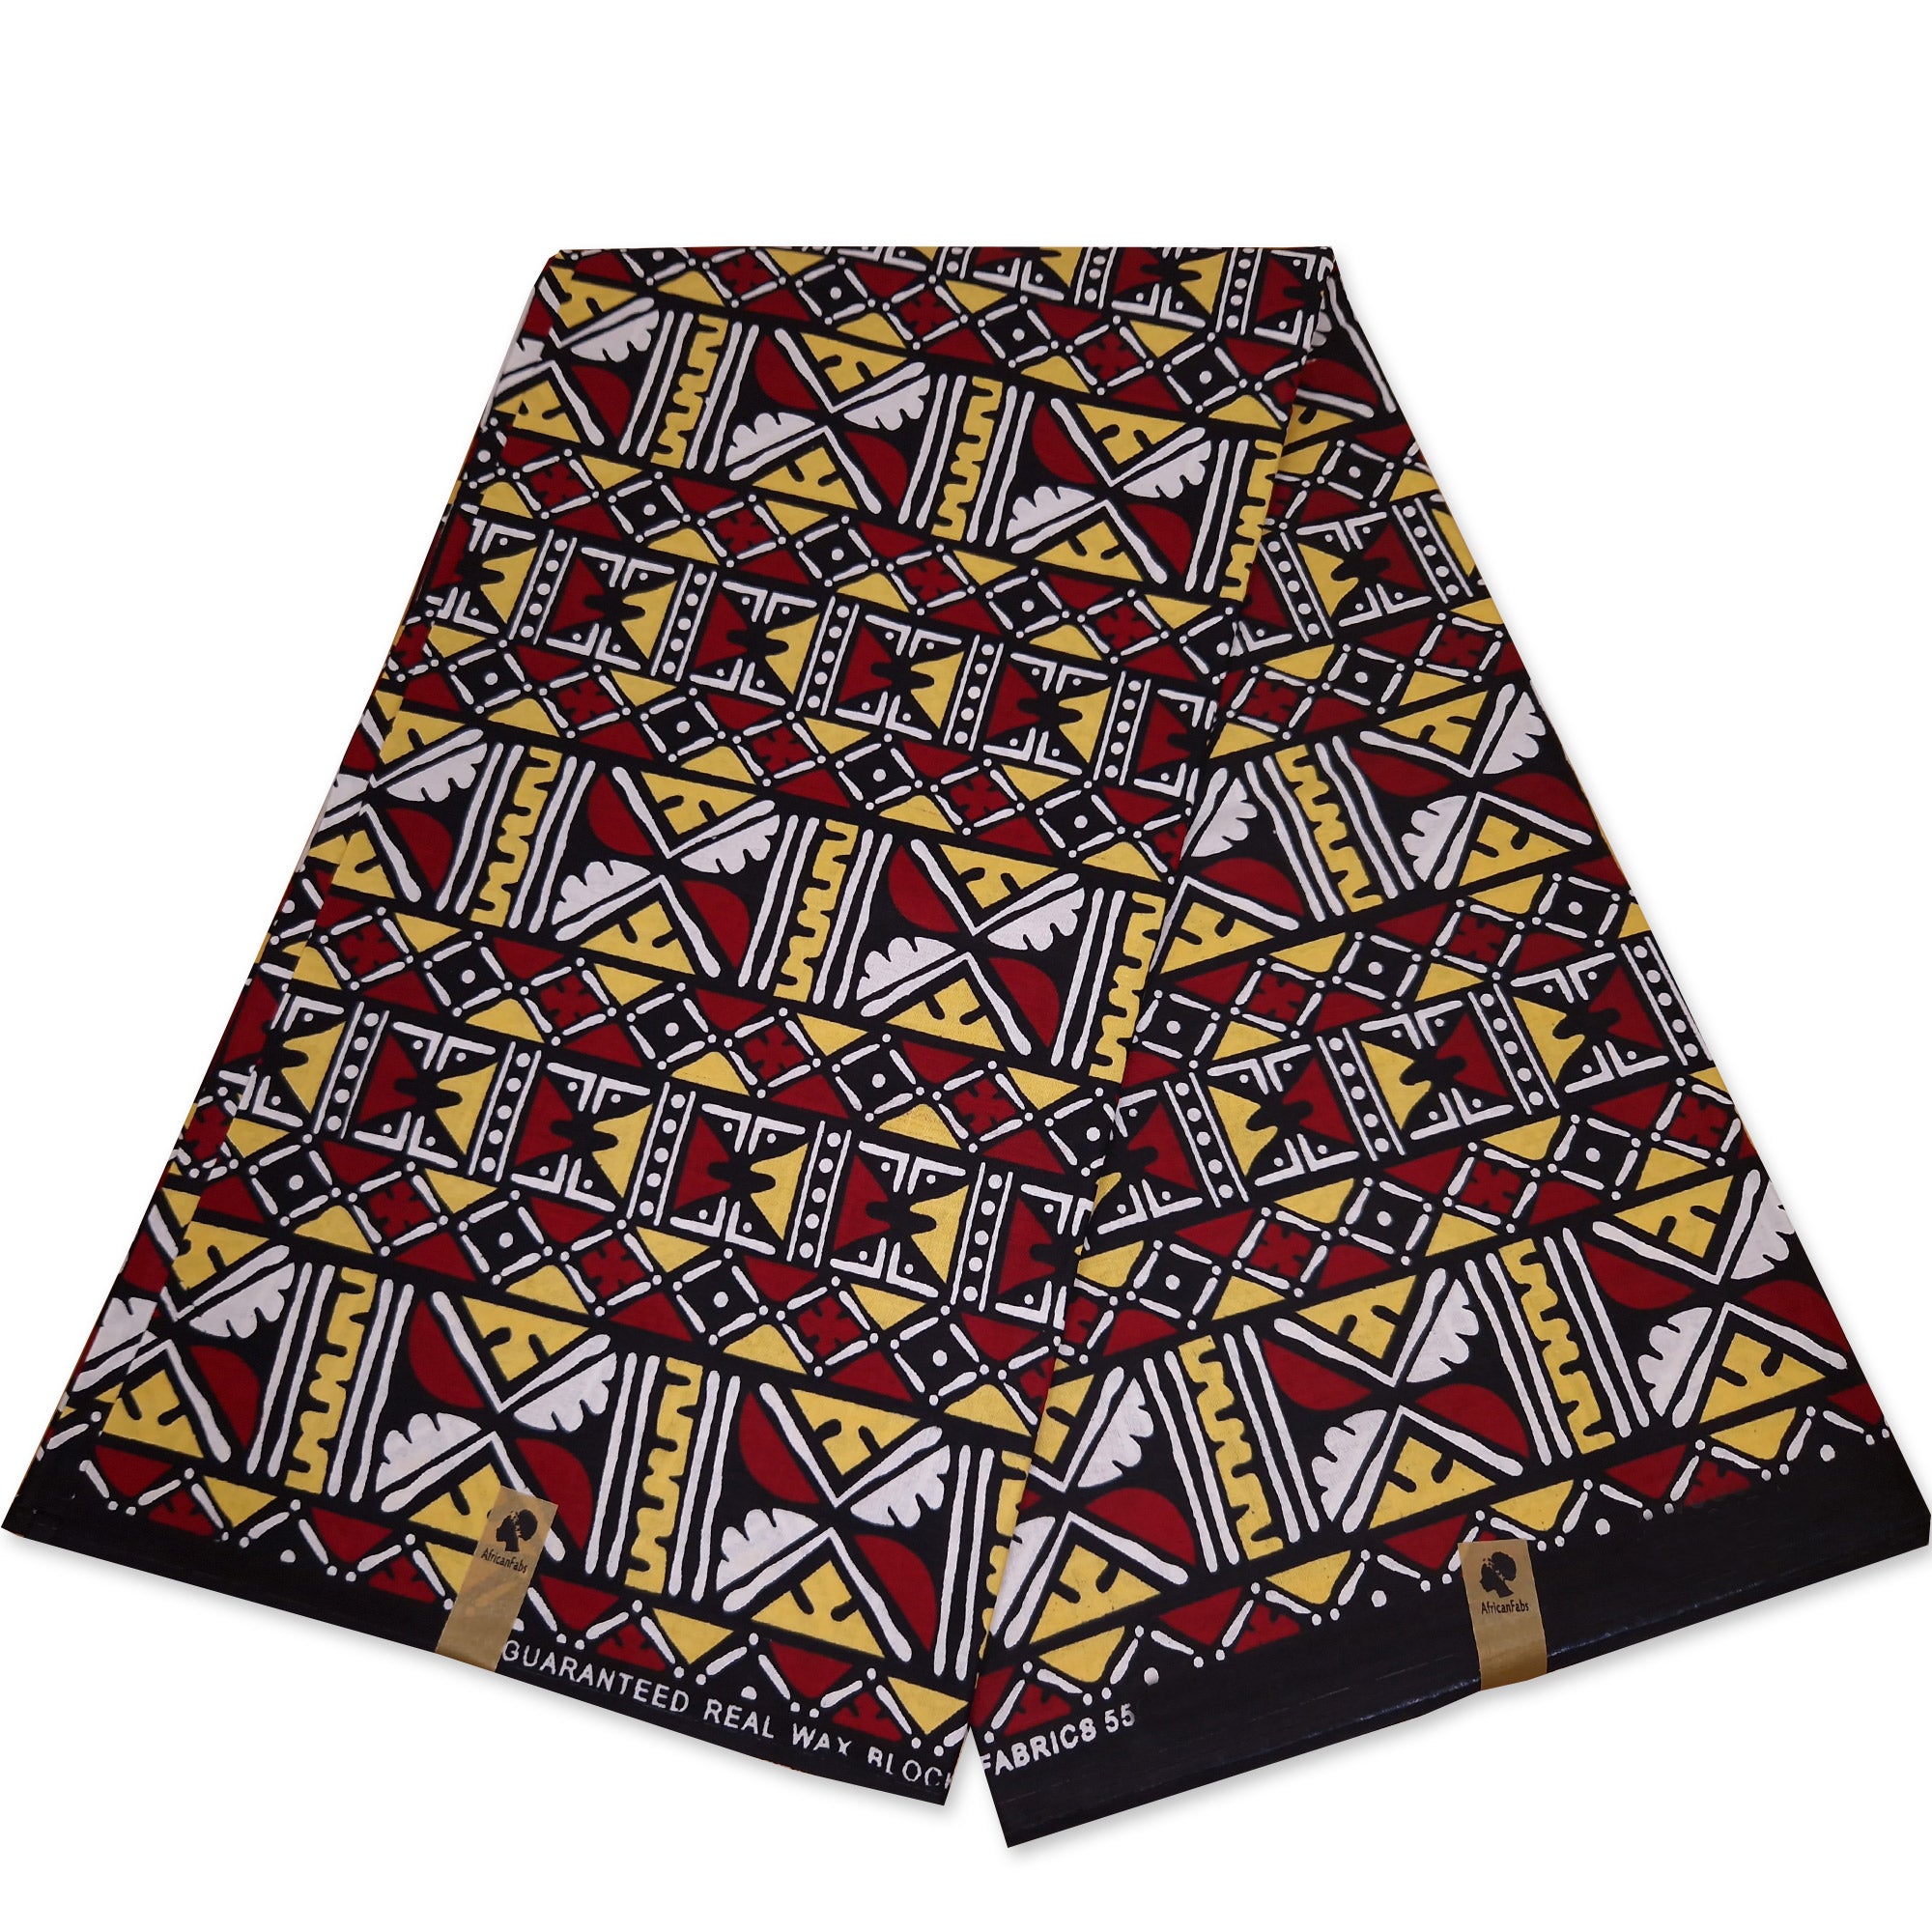 Afrikanischer Print Stoff - Kastanienbraun Bogolan / Mud cloth